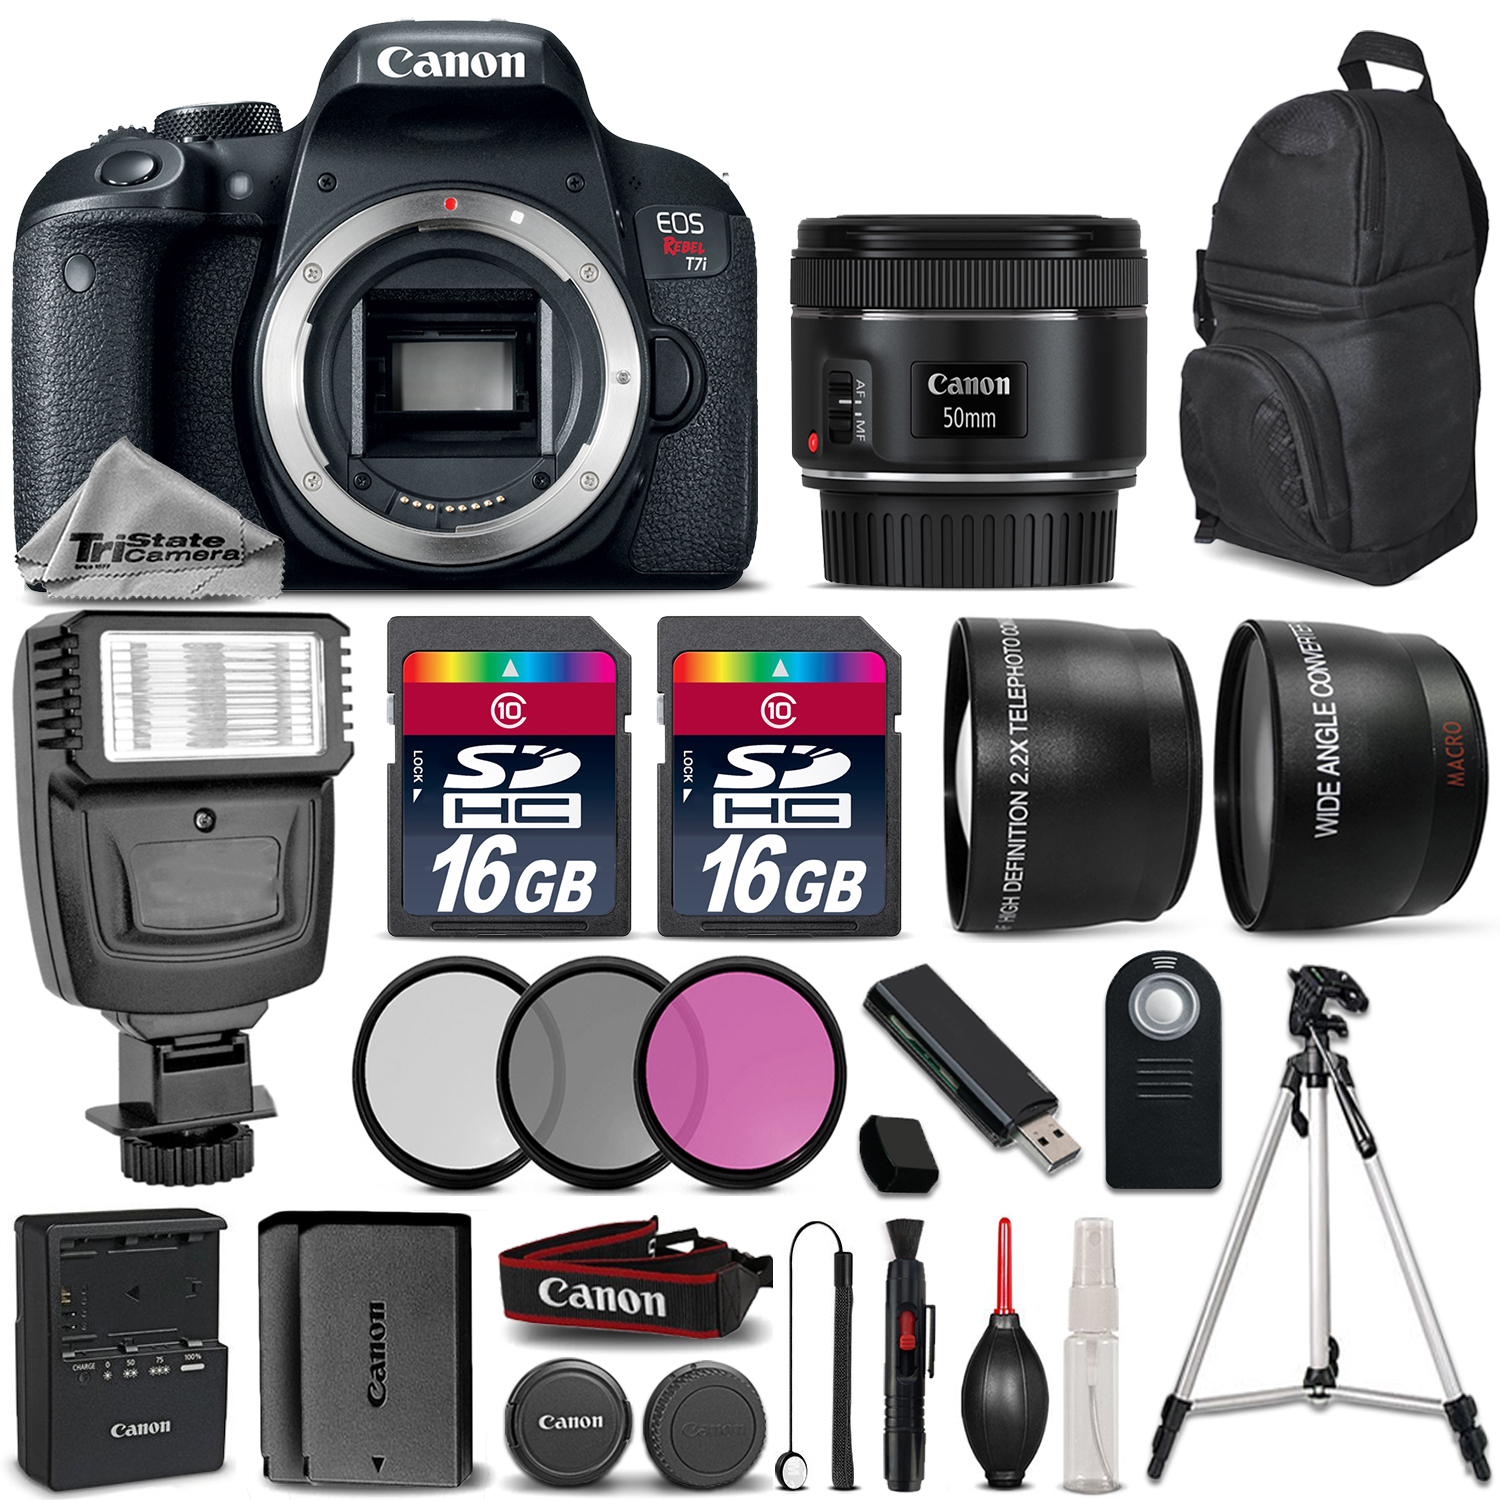 EOS Rebel T7i Camera 800D + 50mm 1.8  + Flash + 16GB + EXT BATT & MORE! *FREE SHIPPING*